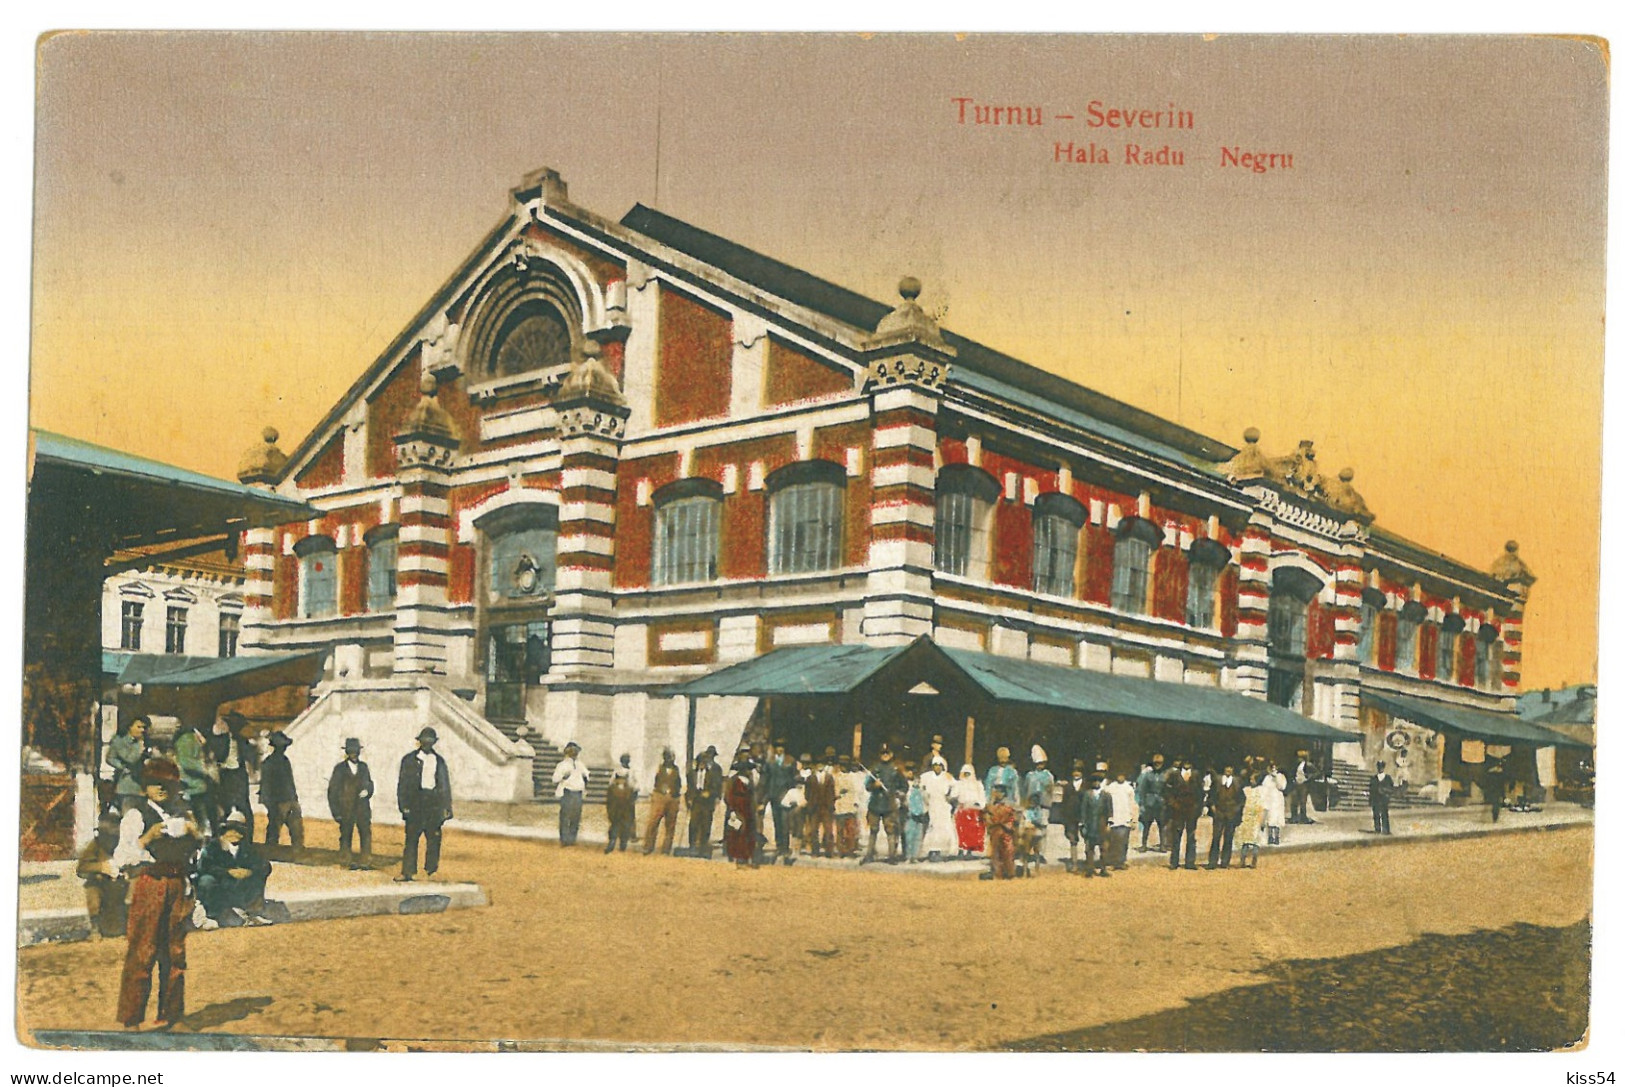 RO 74 - 22767 TURNU-SEVERIN, Market, Hala, Romania - Old Postcard - Used - 1926 - Rumänien